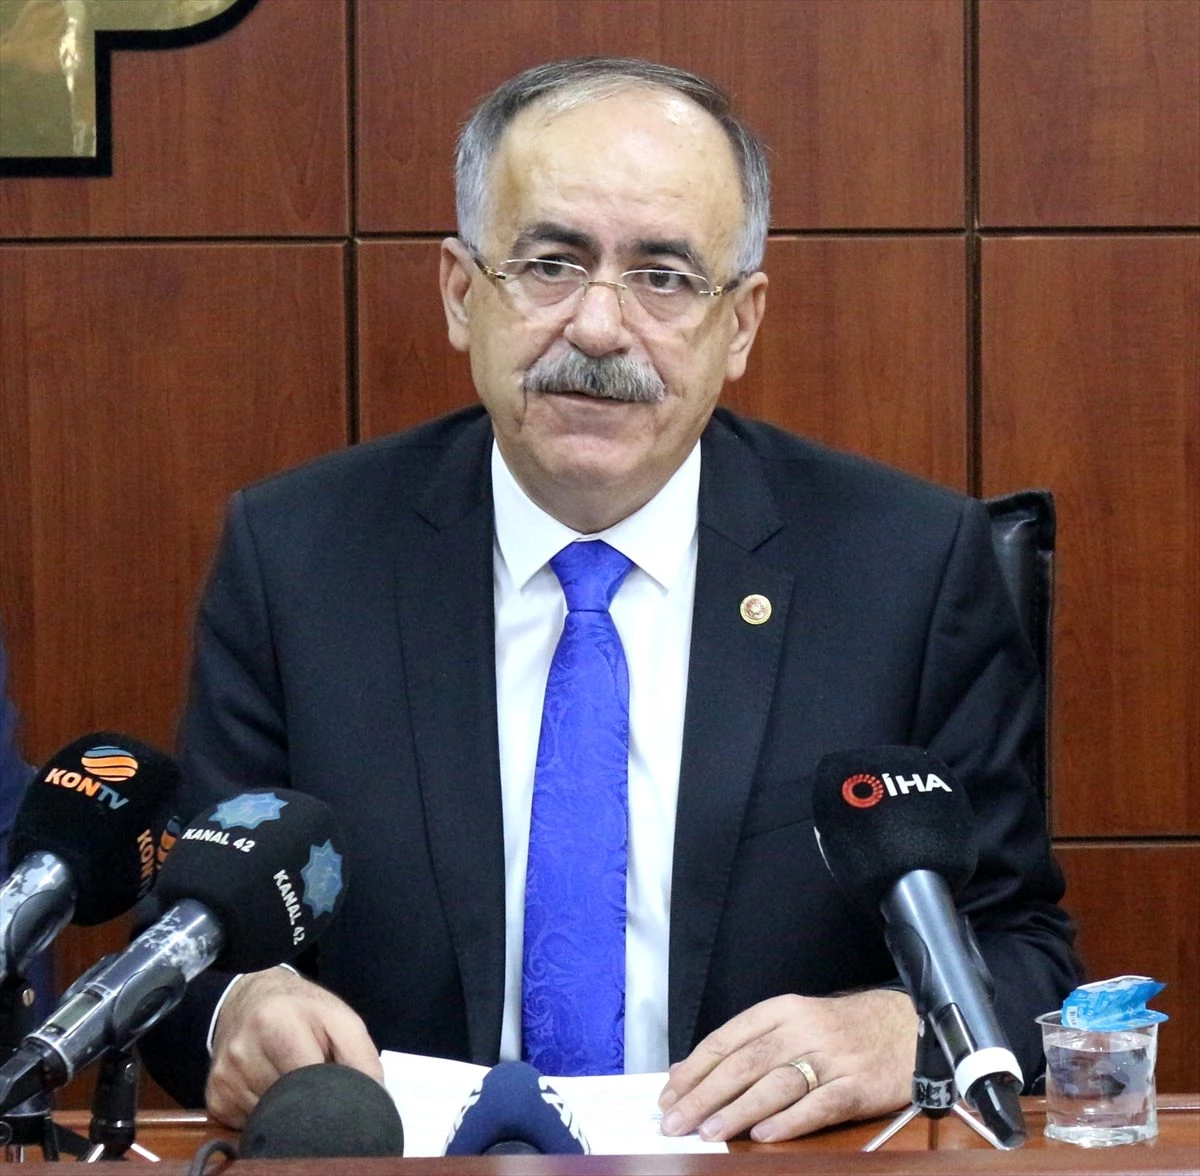 MHP Genel Başkan Yardımcısı Mustafa Kalaycı: "MHP Libya tezkeresini destekleyecektir"